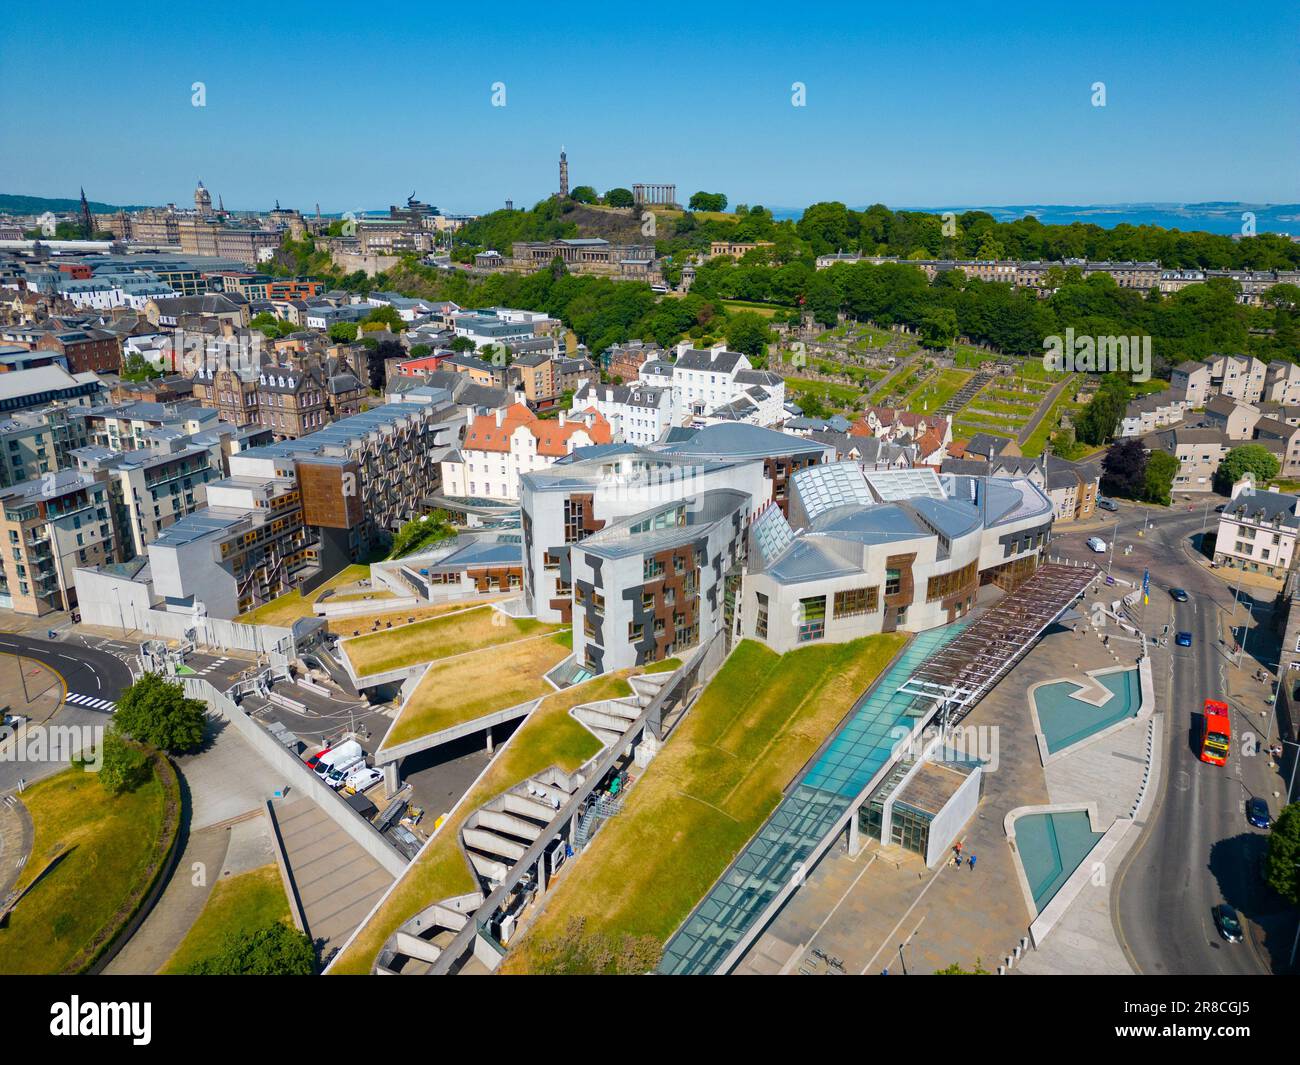 Luftaufnahme des schottischen Parlamentsgebäudes Holyrood in Edinburgh, Schottland, Großbritannien Stockfoto